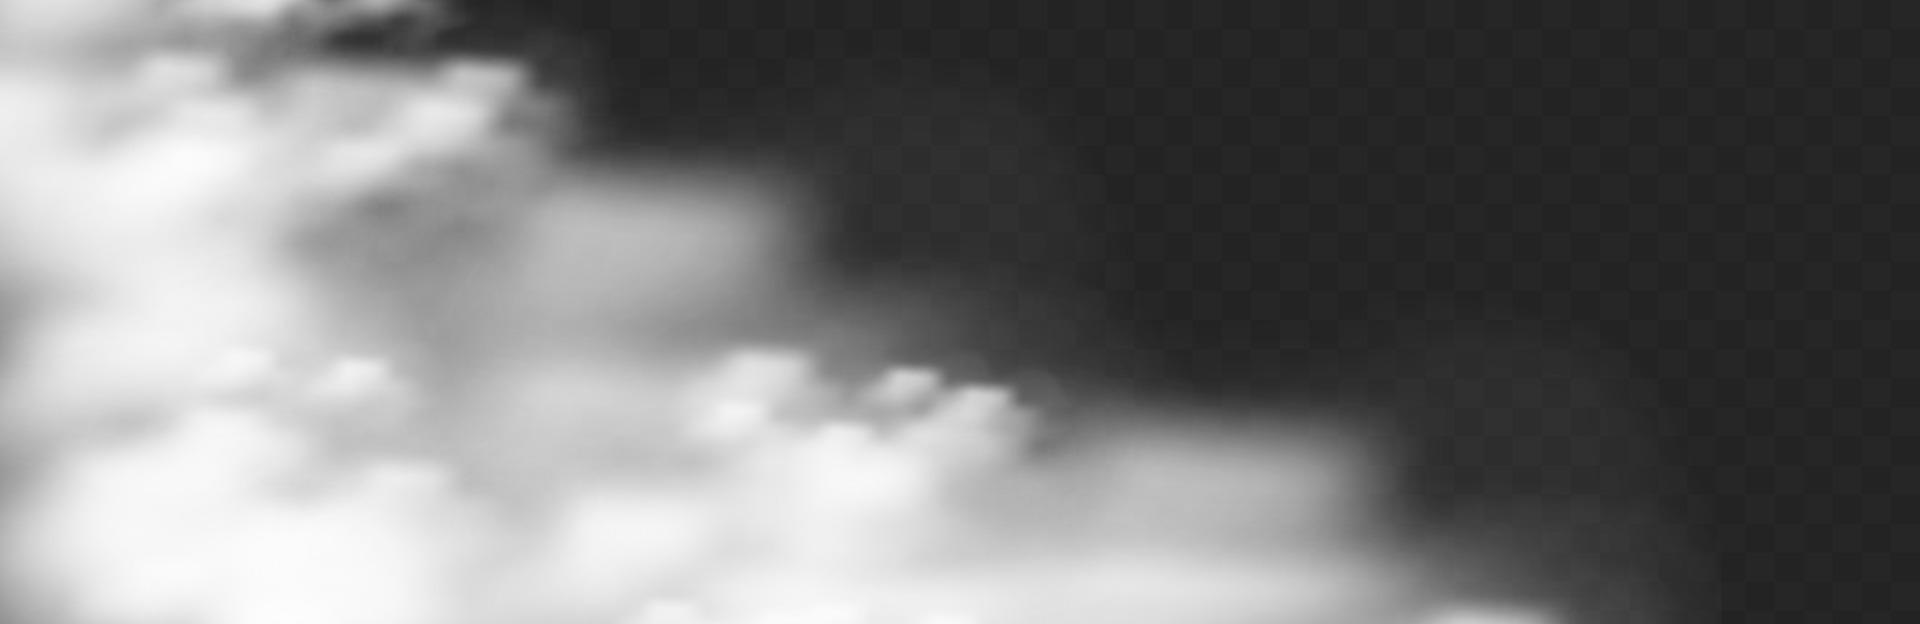 mist of magisch poeder leggen. realistisch wolkeneffect voor omgevingsillustratie vector